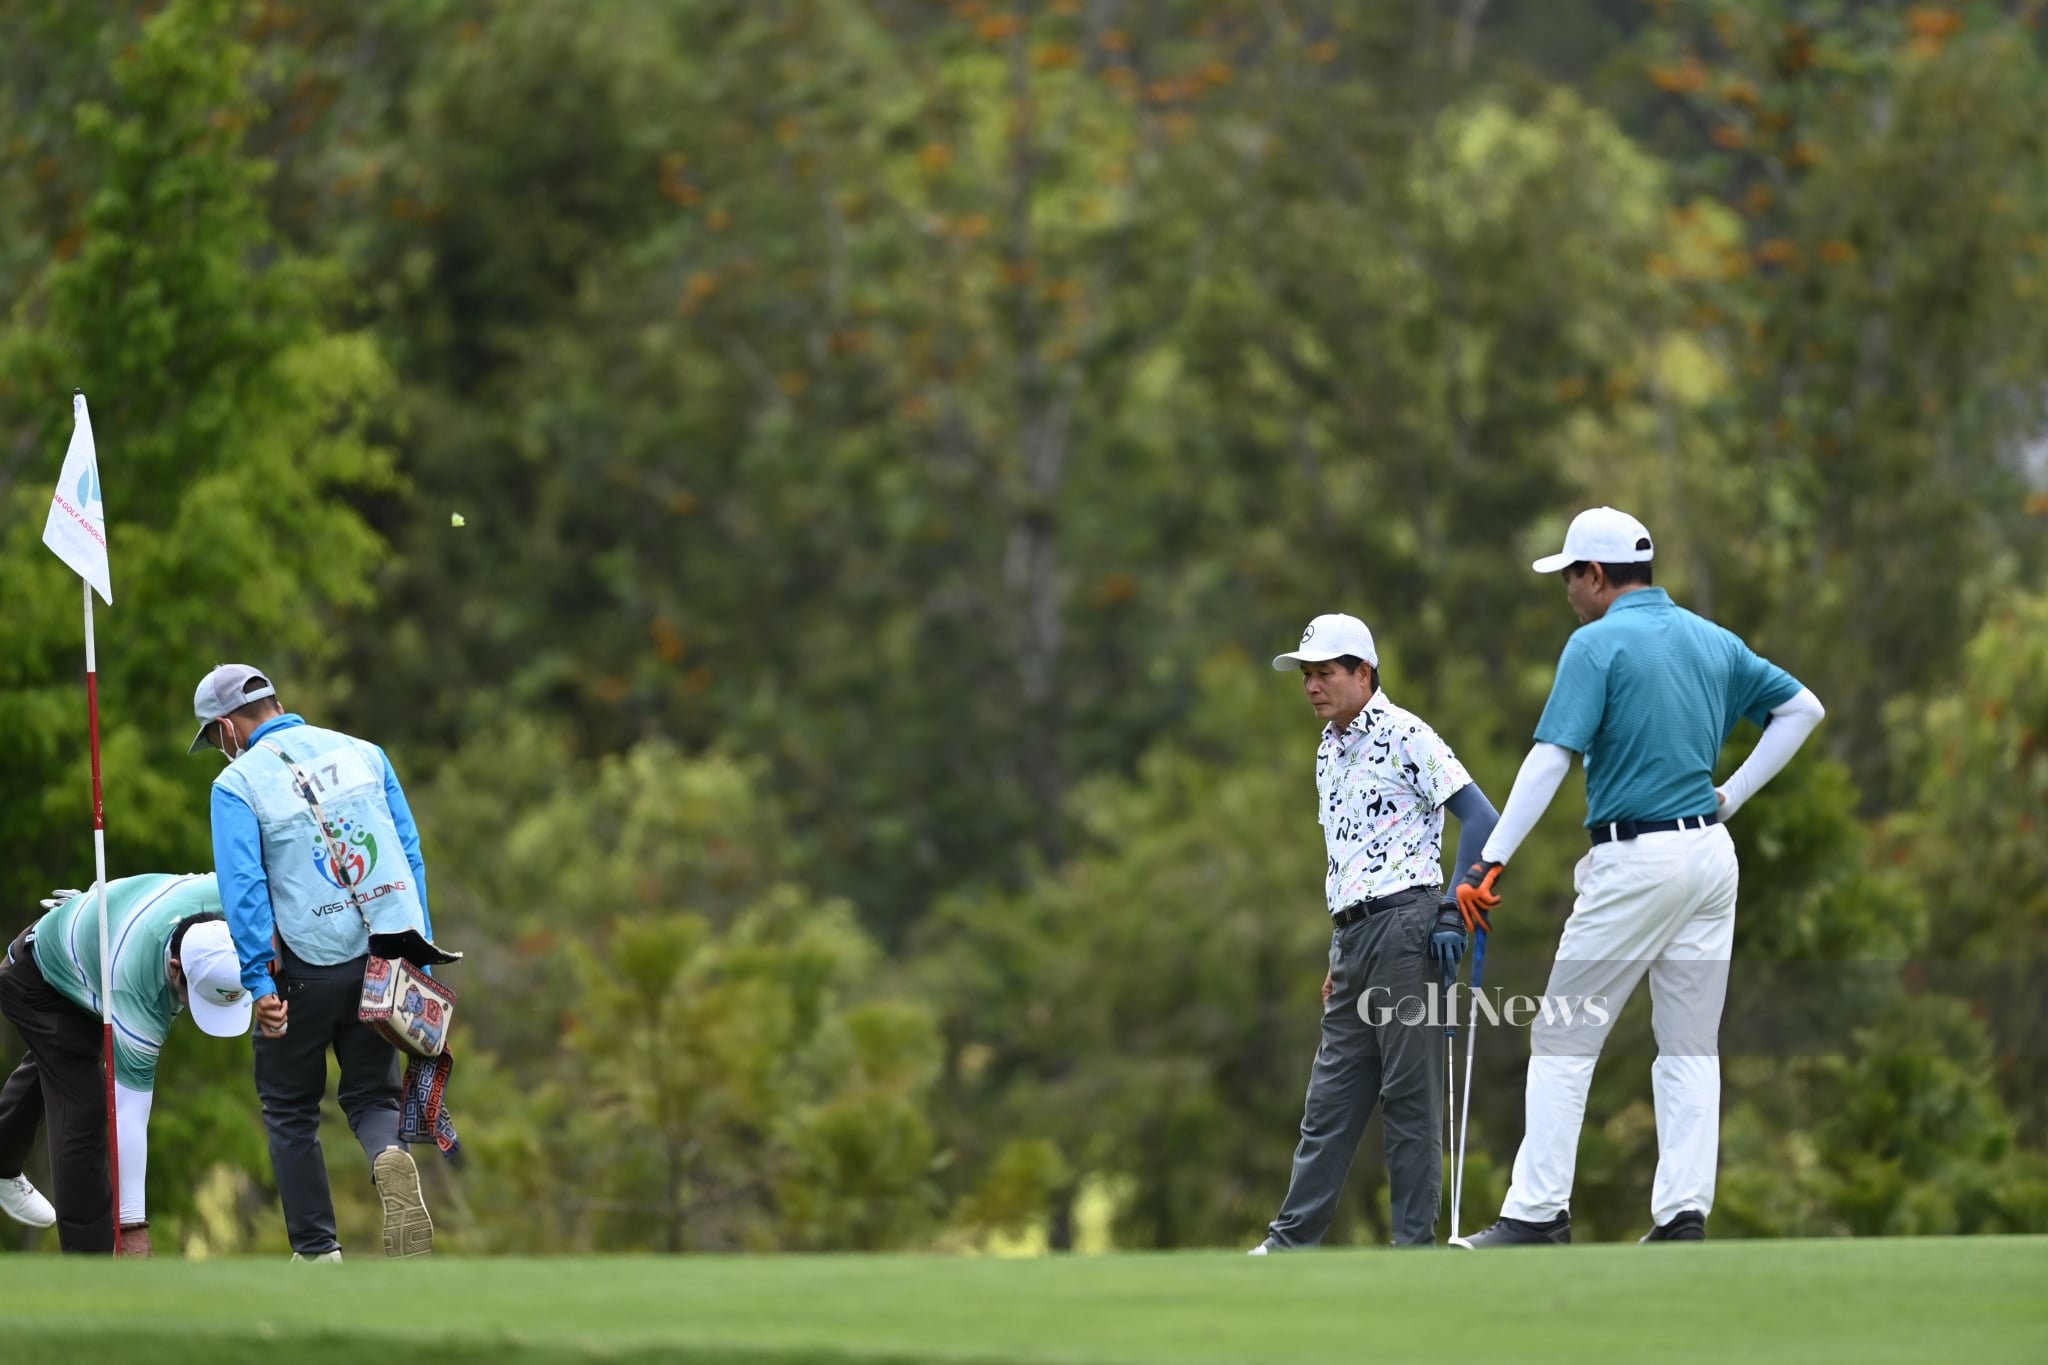 Hiệp hội golf Việt Nam thông báo hoãn giải chuyên nghiệp Vietnam Open